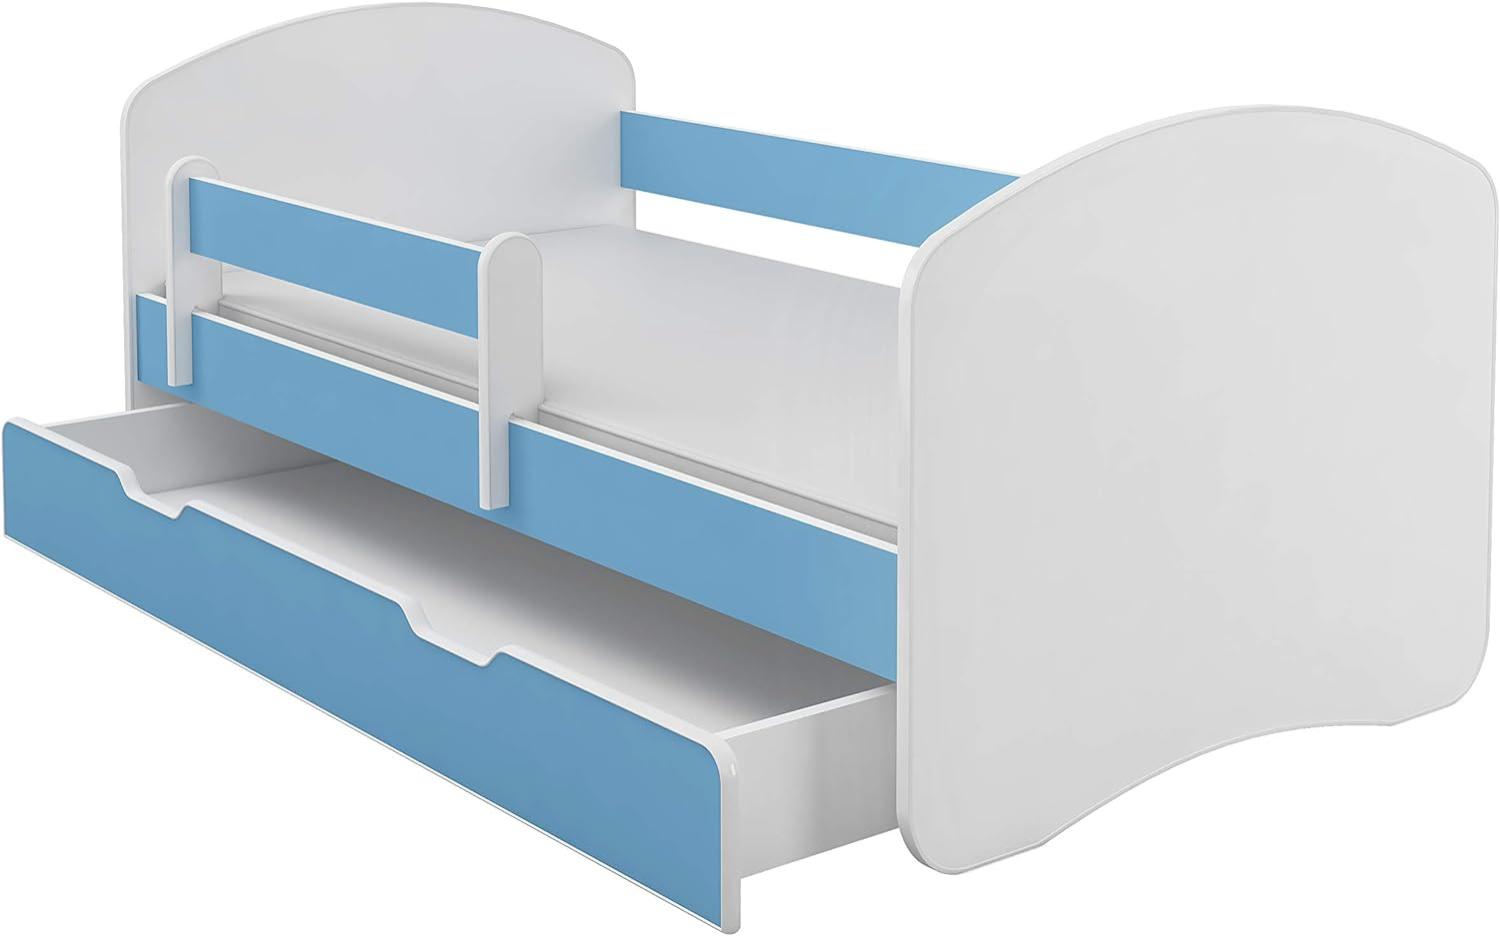 Kinderbett Jugendbett mit einer Schublade und Matratze Weiß ACMA II (160x80 cm + Schublade, Blau) Bild 1